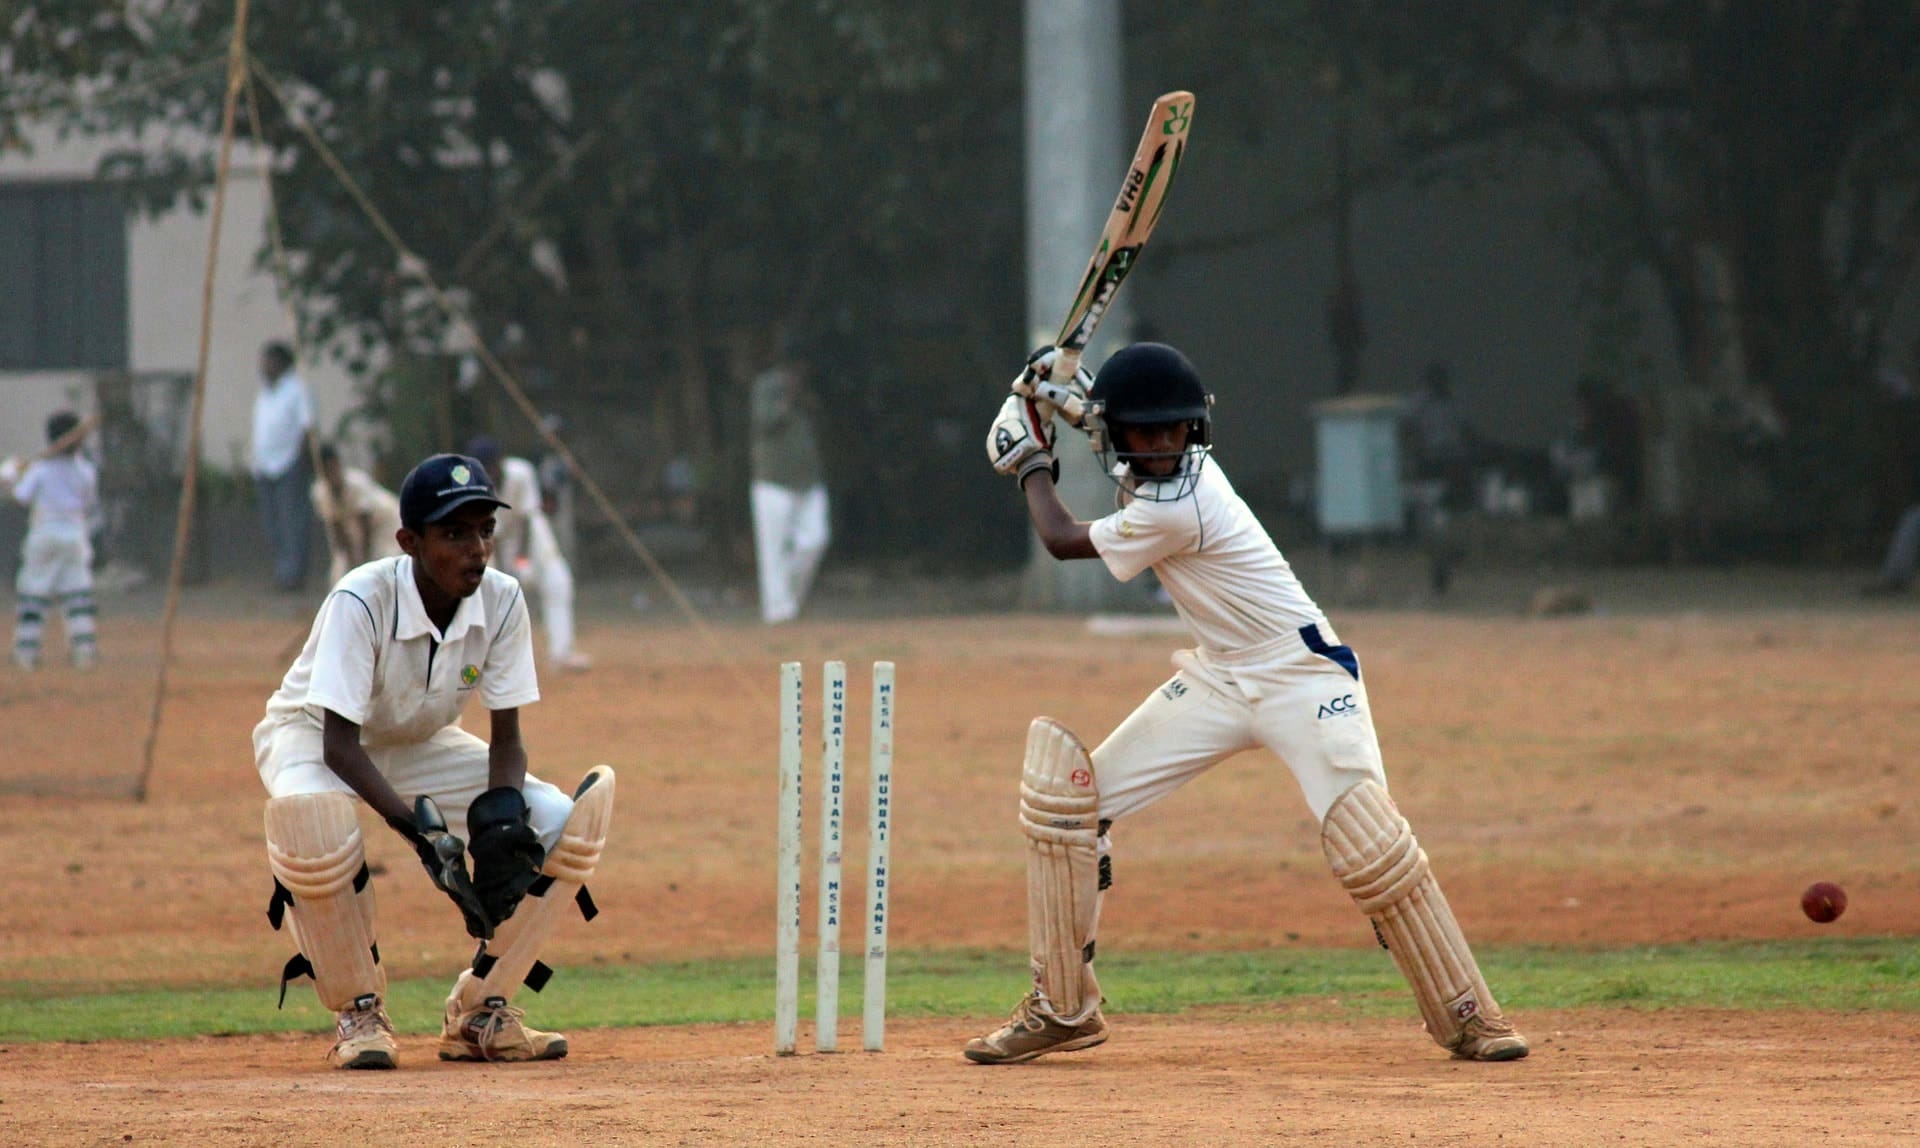 Cricket player at bat